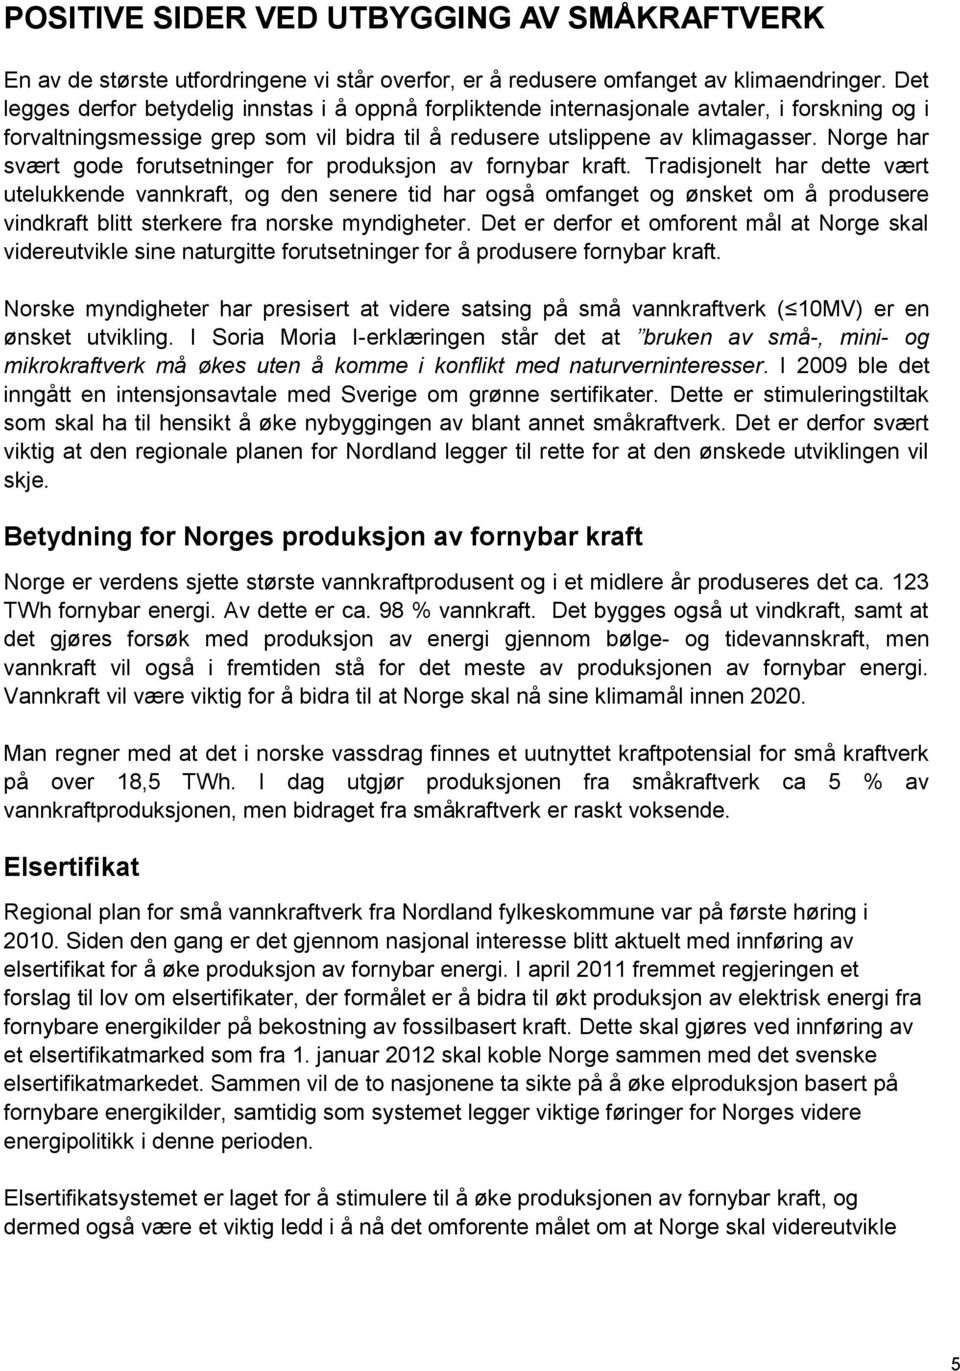 Norge har svært gode forutsetninger for produksjon av fornybar kraft.